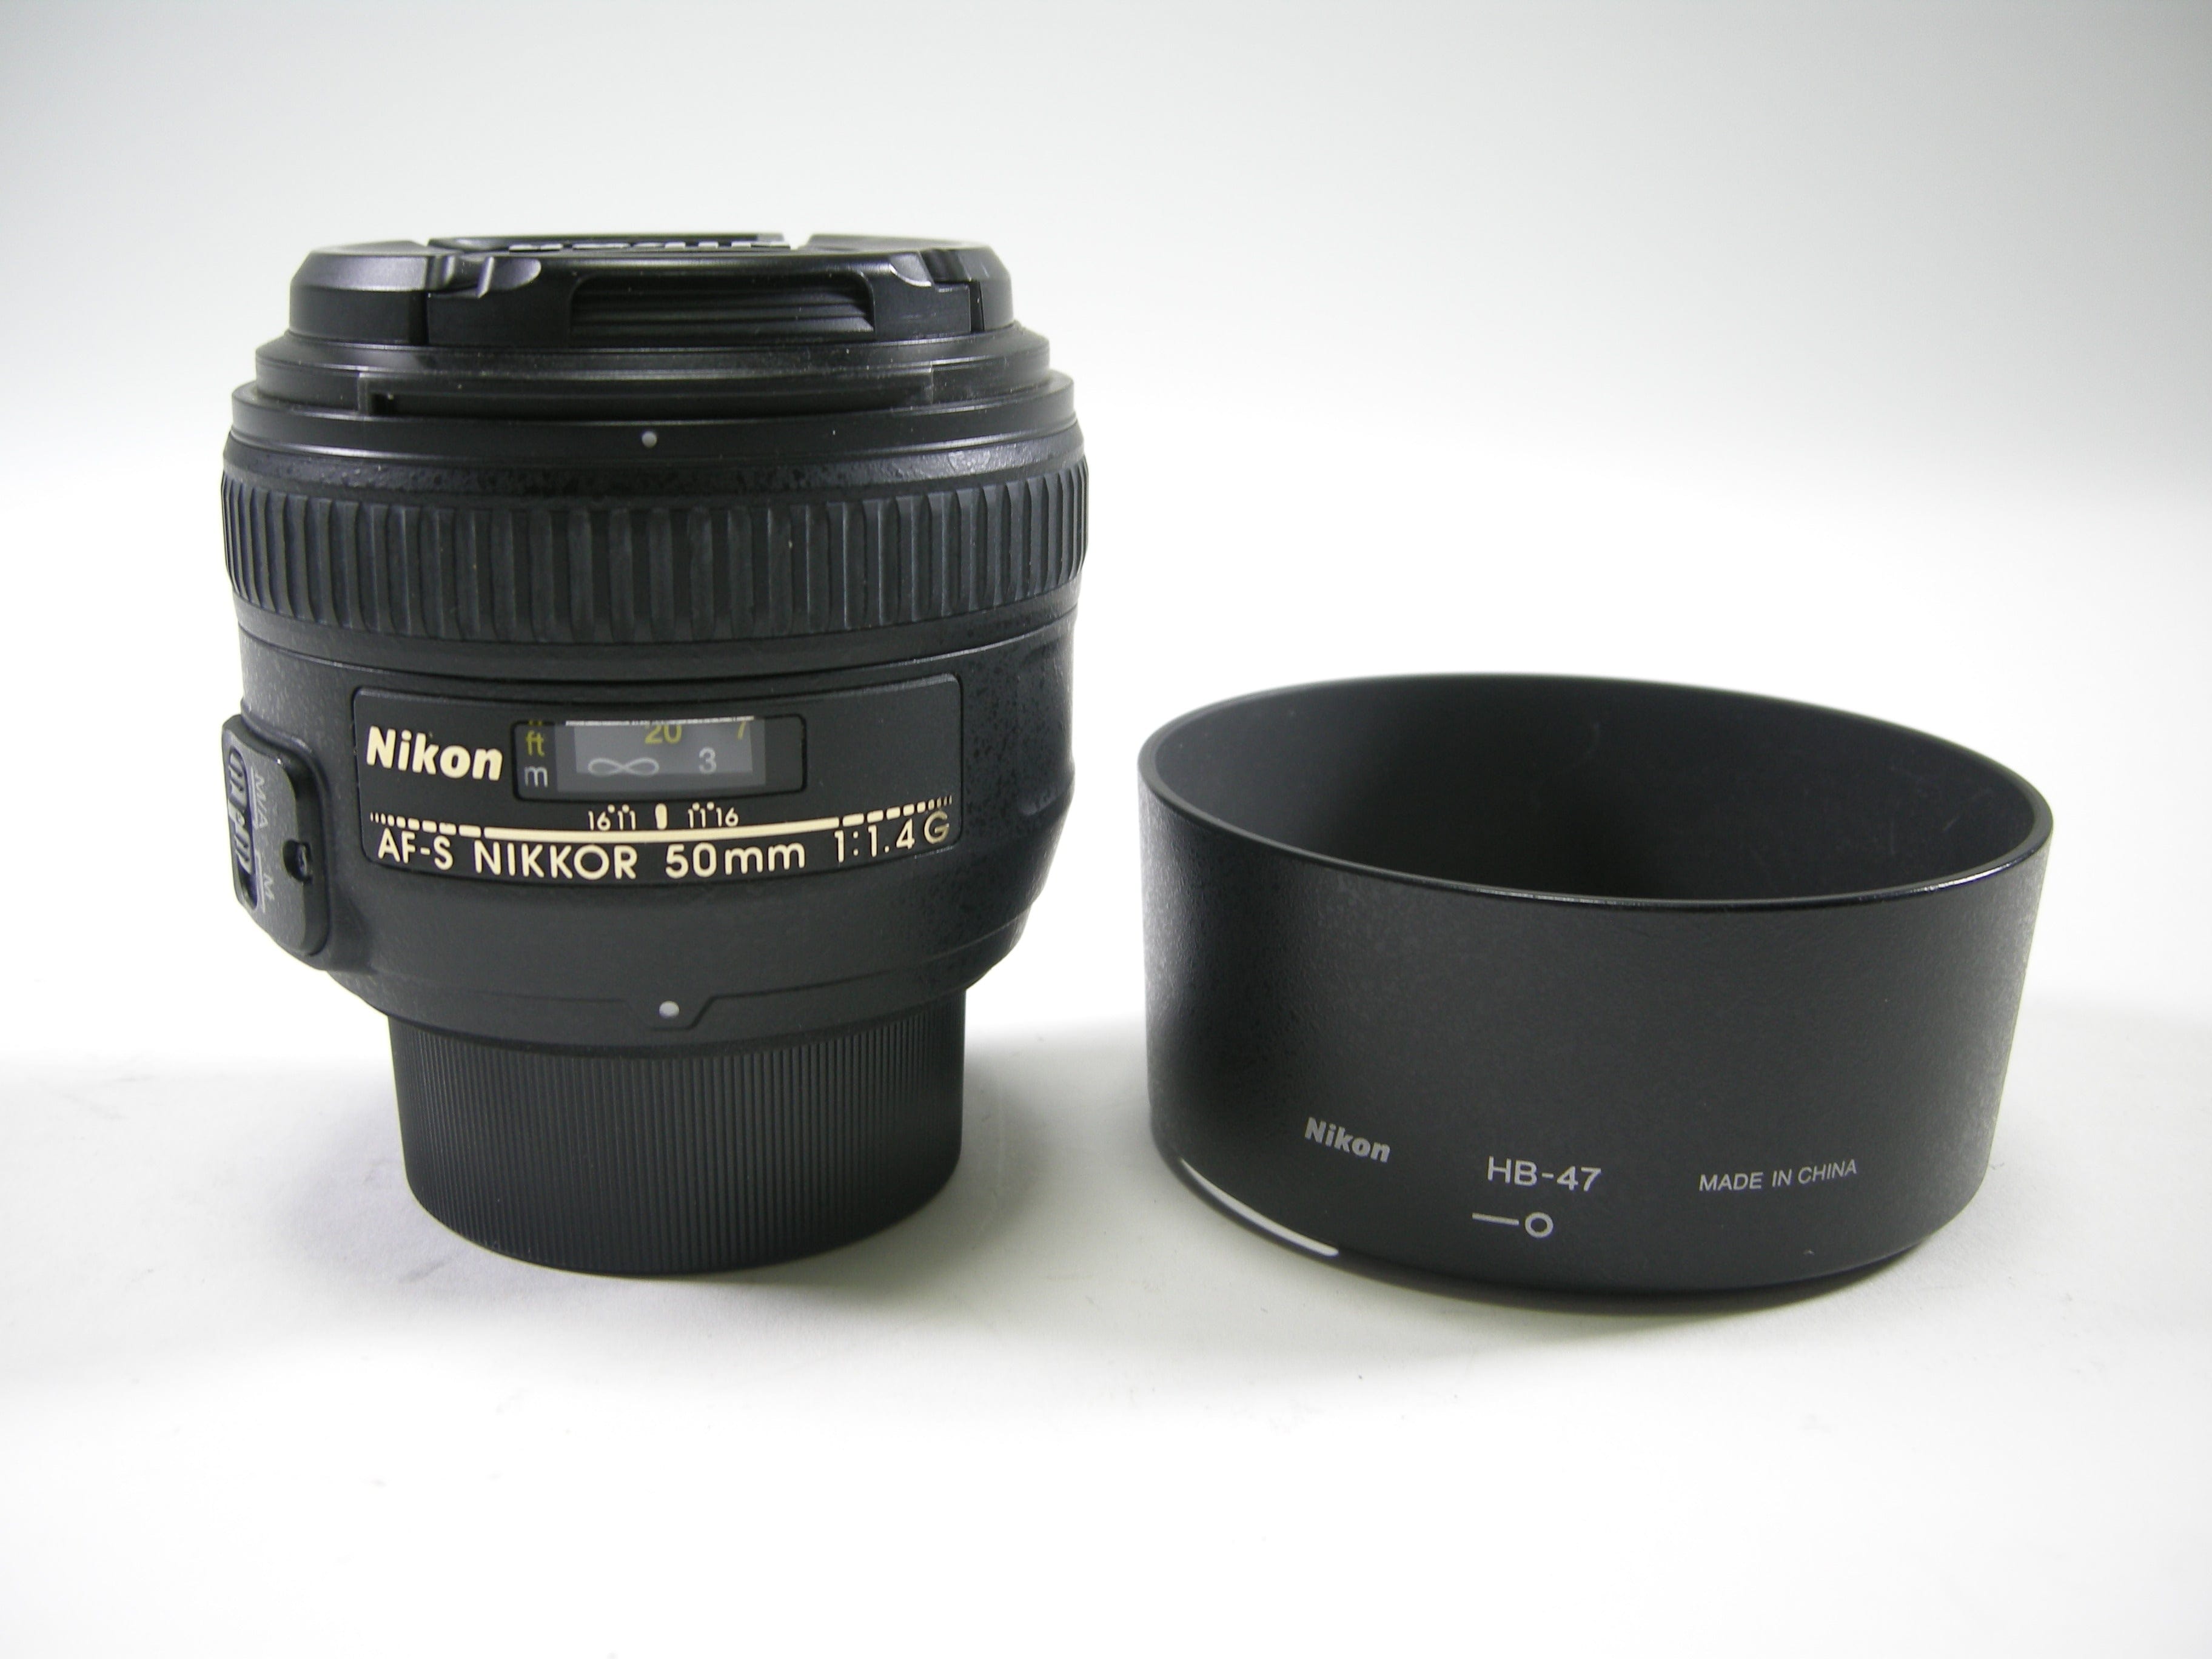 Nikon AF-S Nikkor 50mm f1.4G